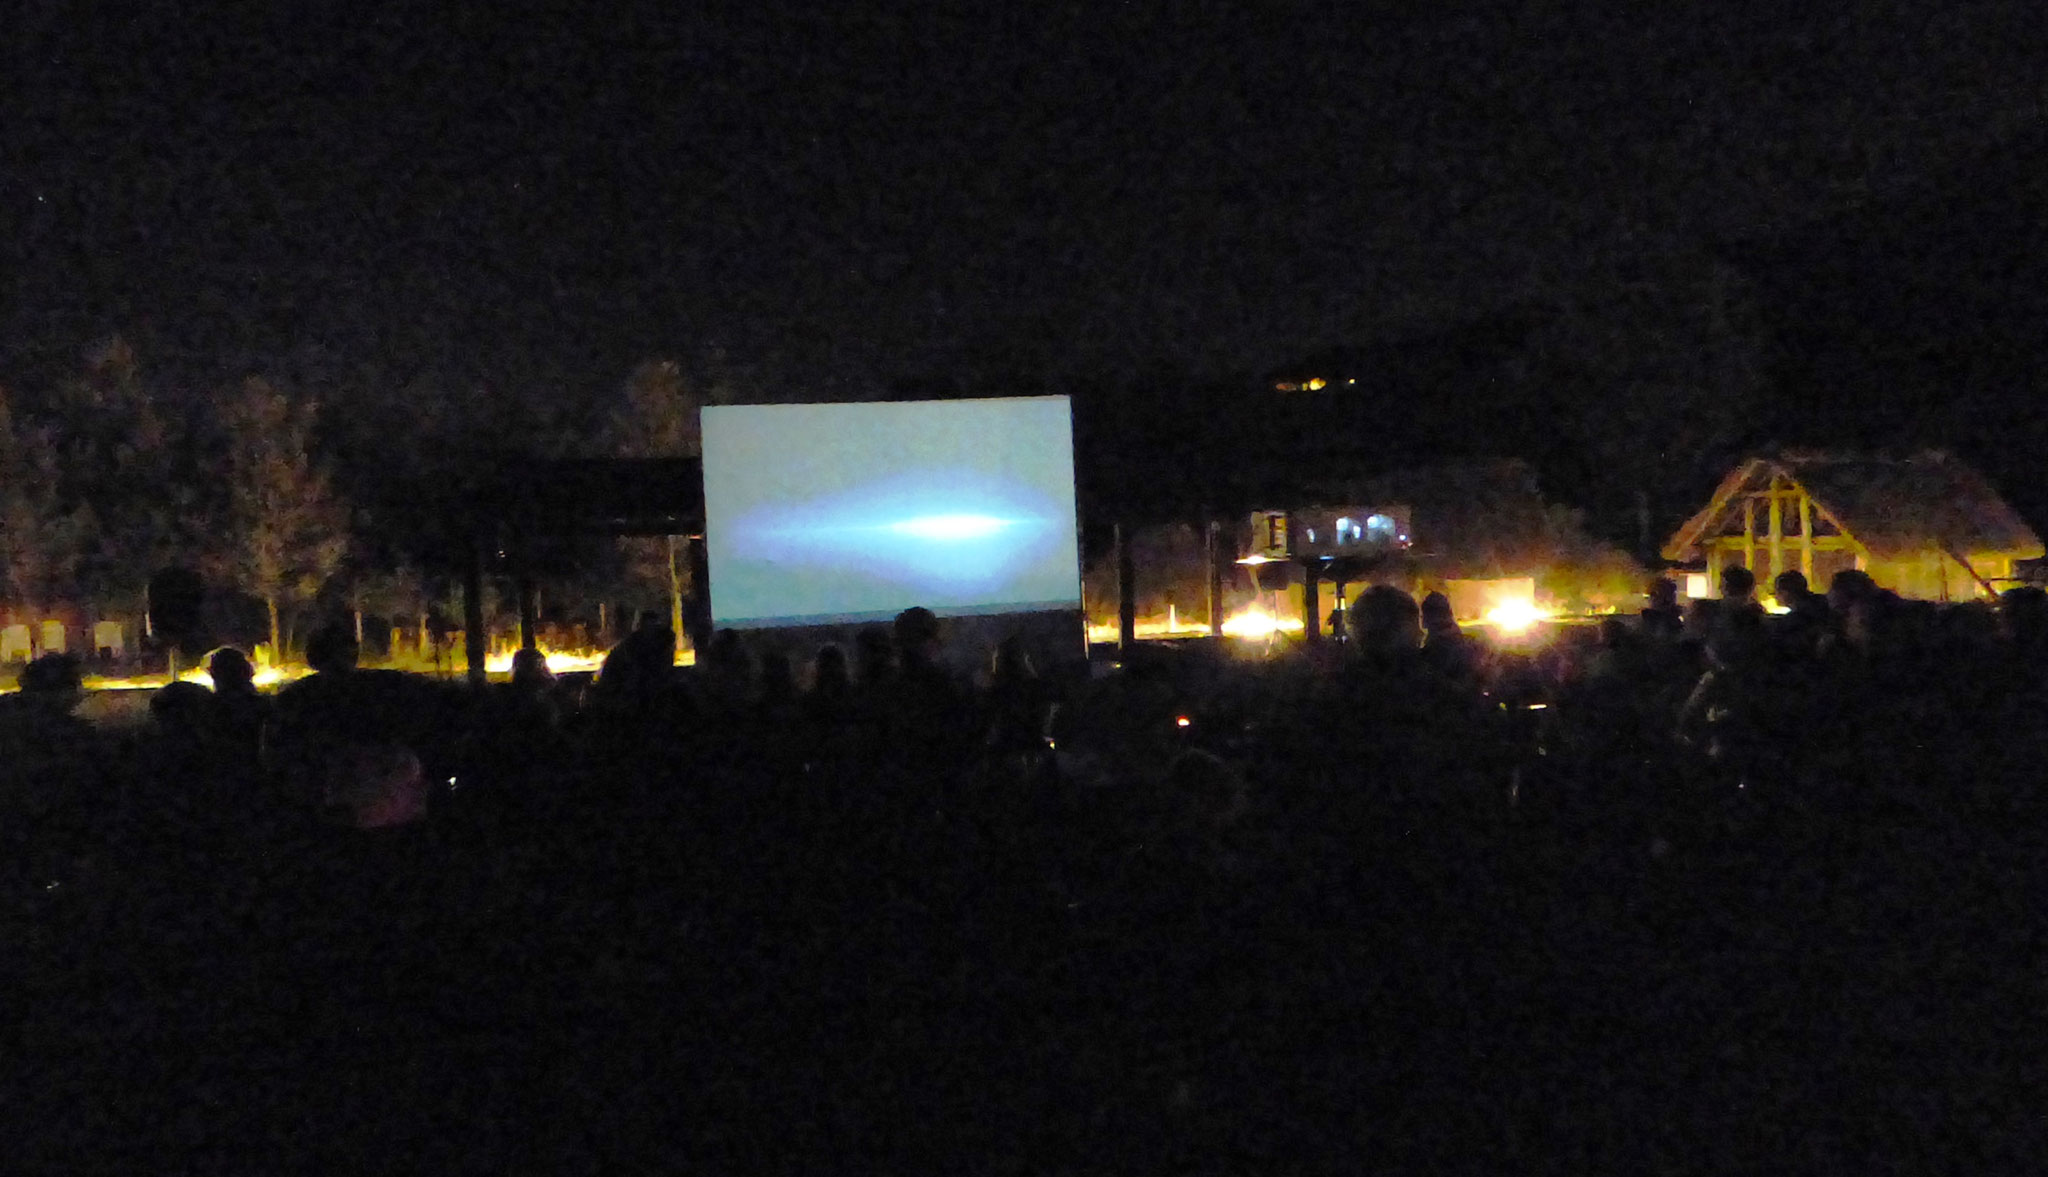 cinema sotto le stelle - parco archeologico di Travo 23 agosto